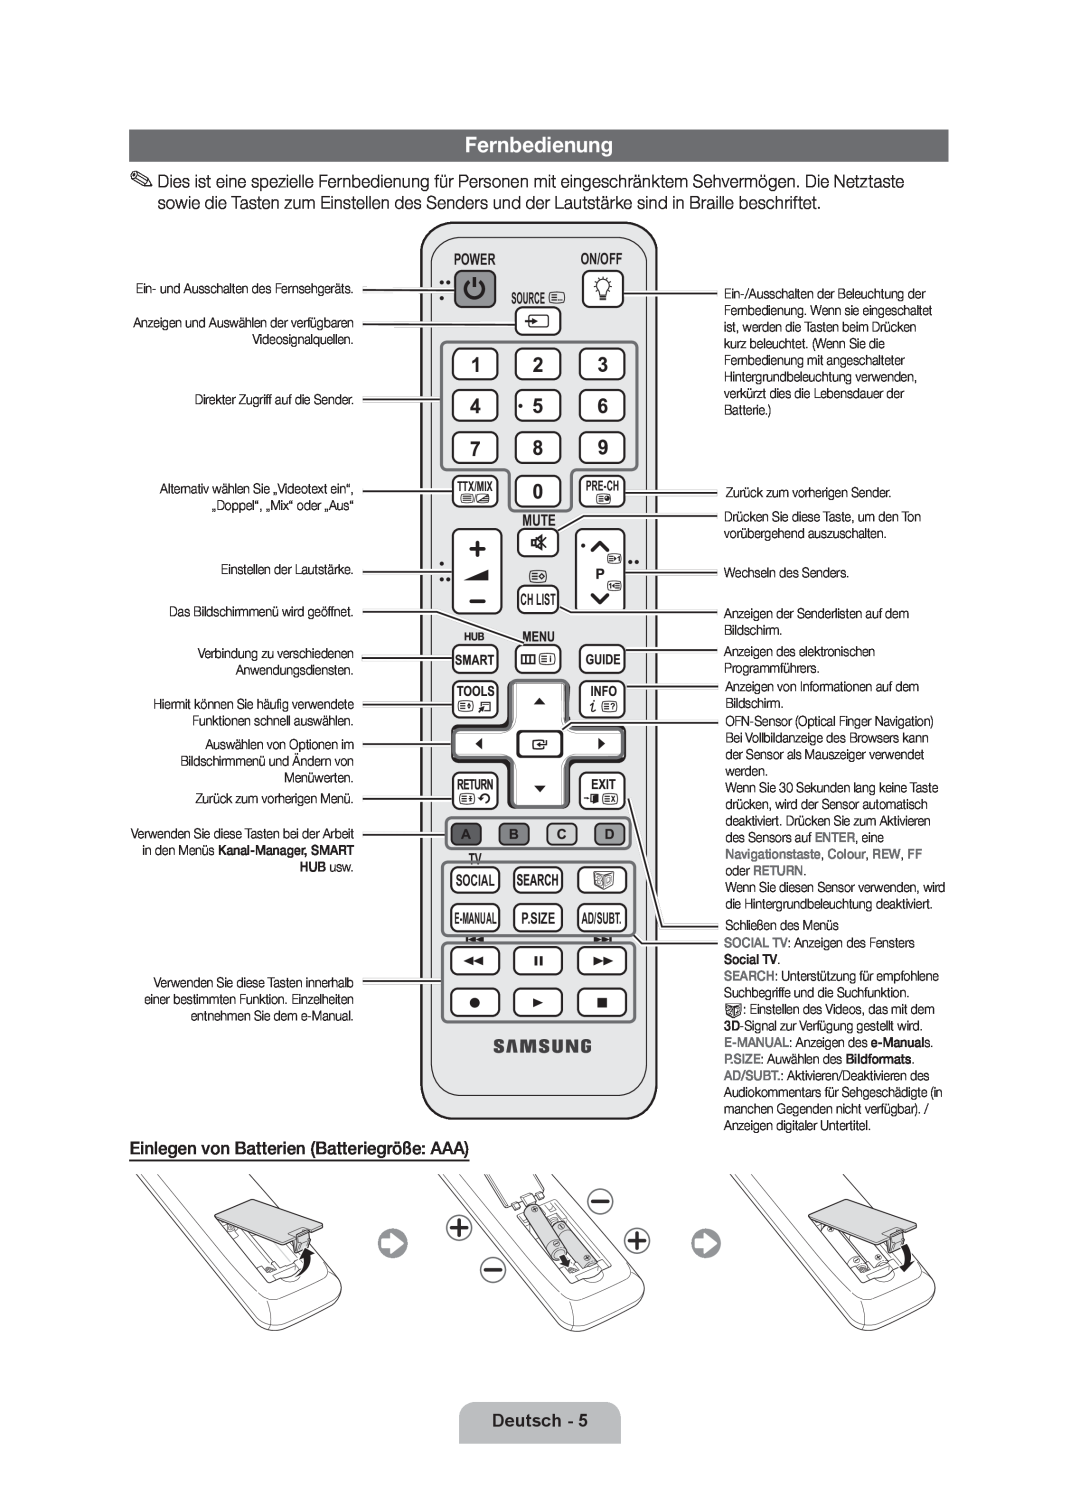 Samsung UE40D7000LSXZF manual Fernbedienung, Einlegen von Batterien Batteriegröße AAA, Deutsch, Power On/Off Source 